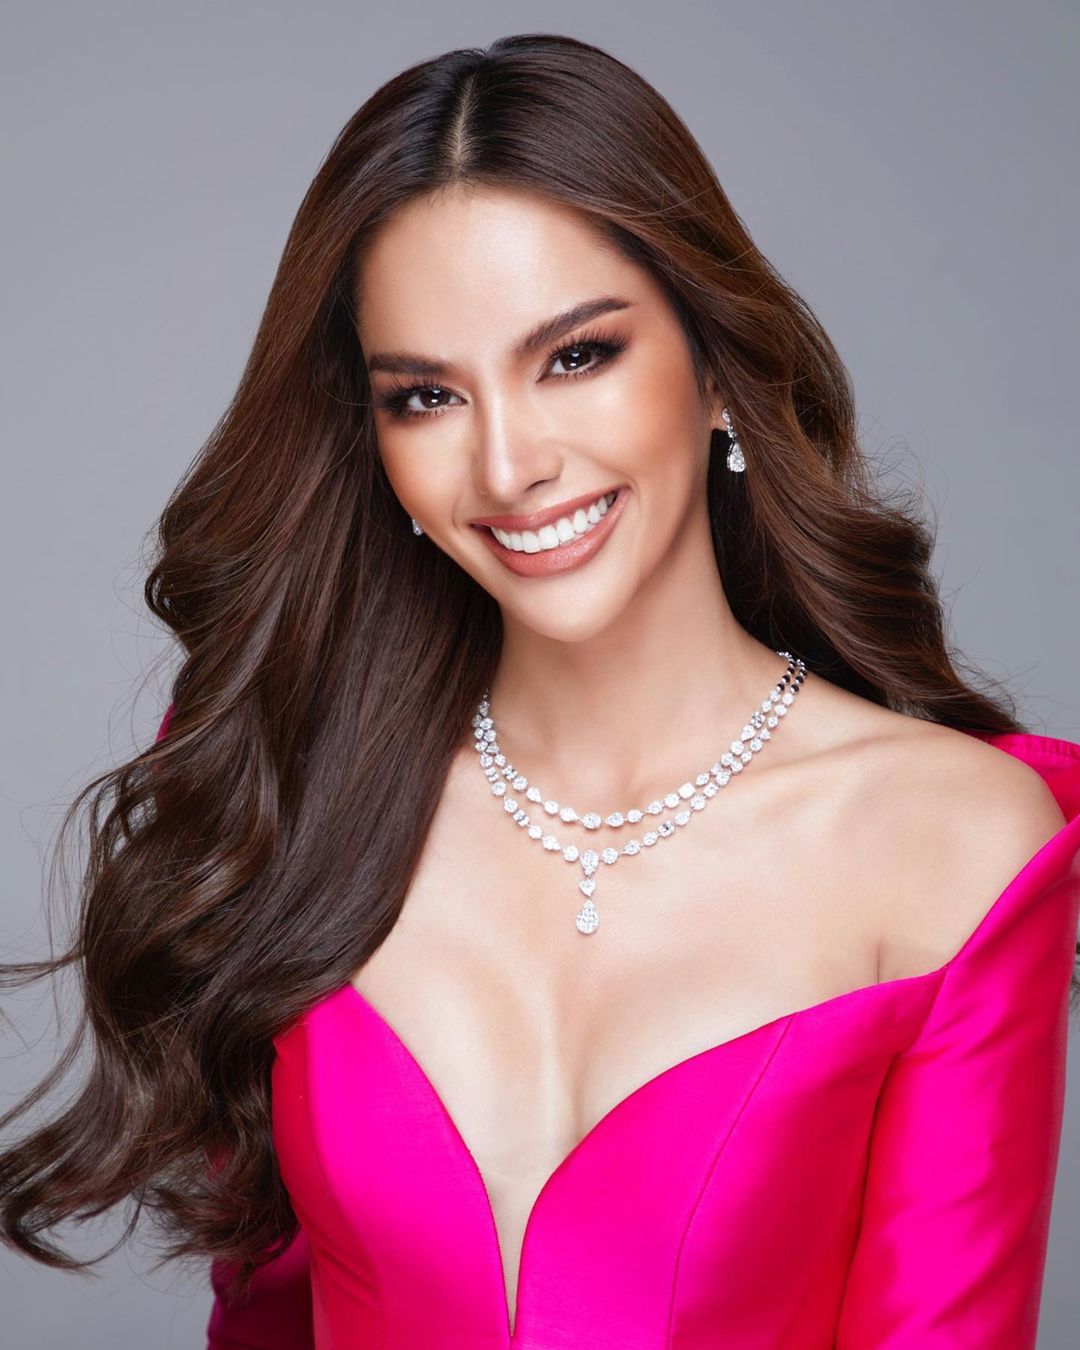 Đối thủ 'nặng ký' của Ngọc Châu: Hoa hậu lớn lên từ bãi rác, mang câu chuyện truyền cảm hứng đúng tiêu chí Miss Universe 2022 - Ảnh 2.